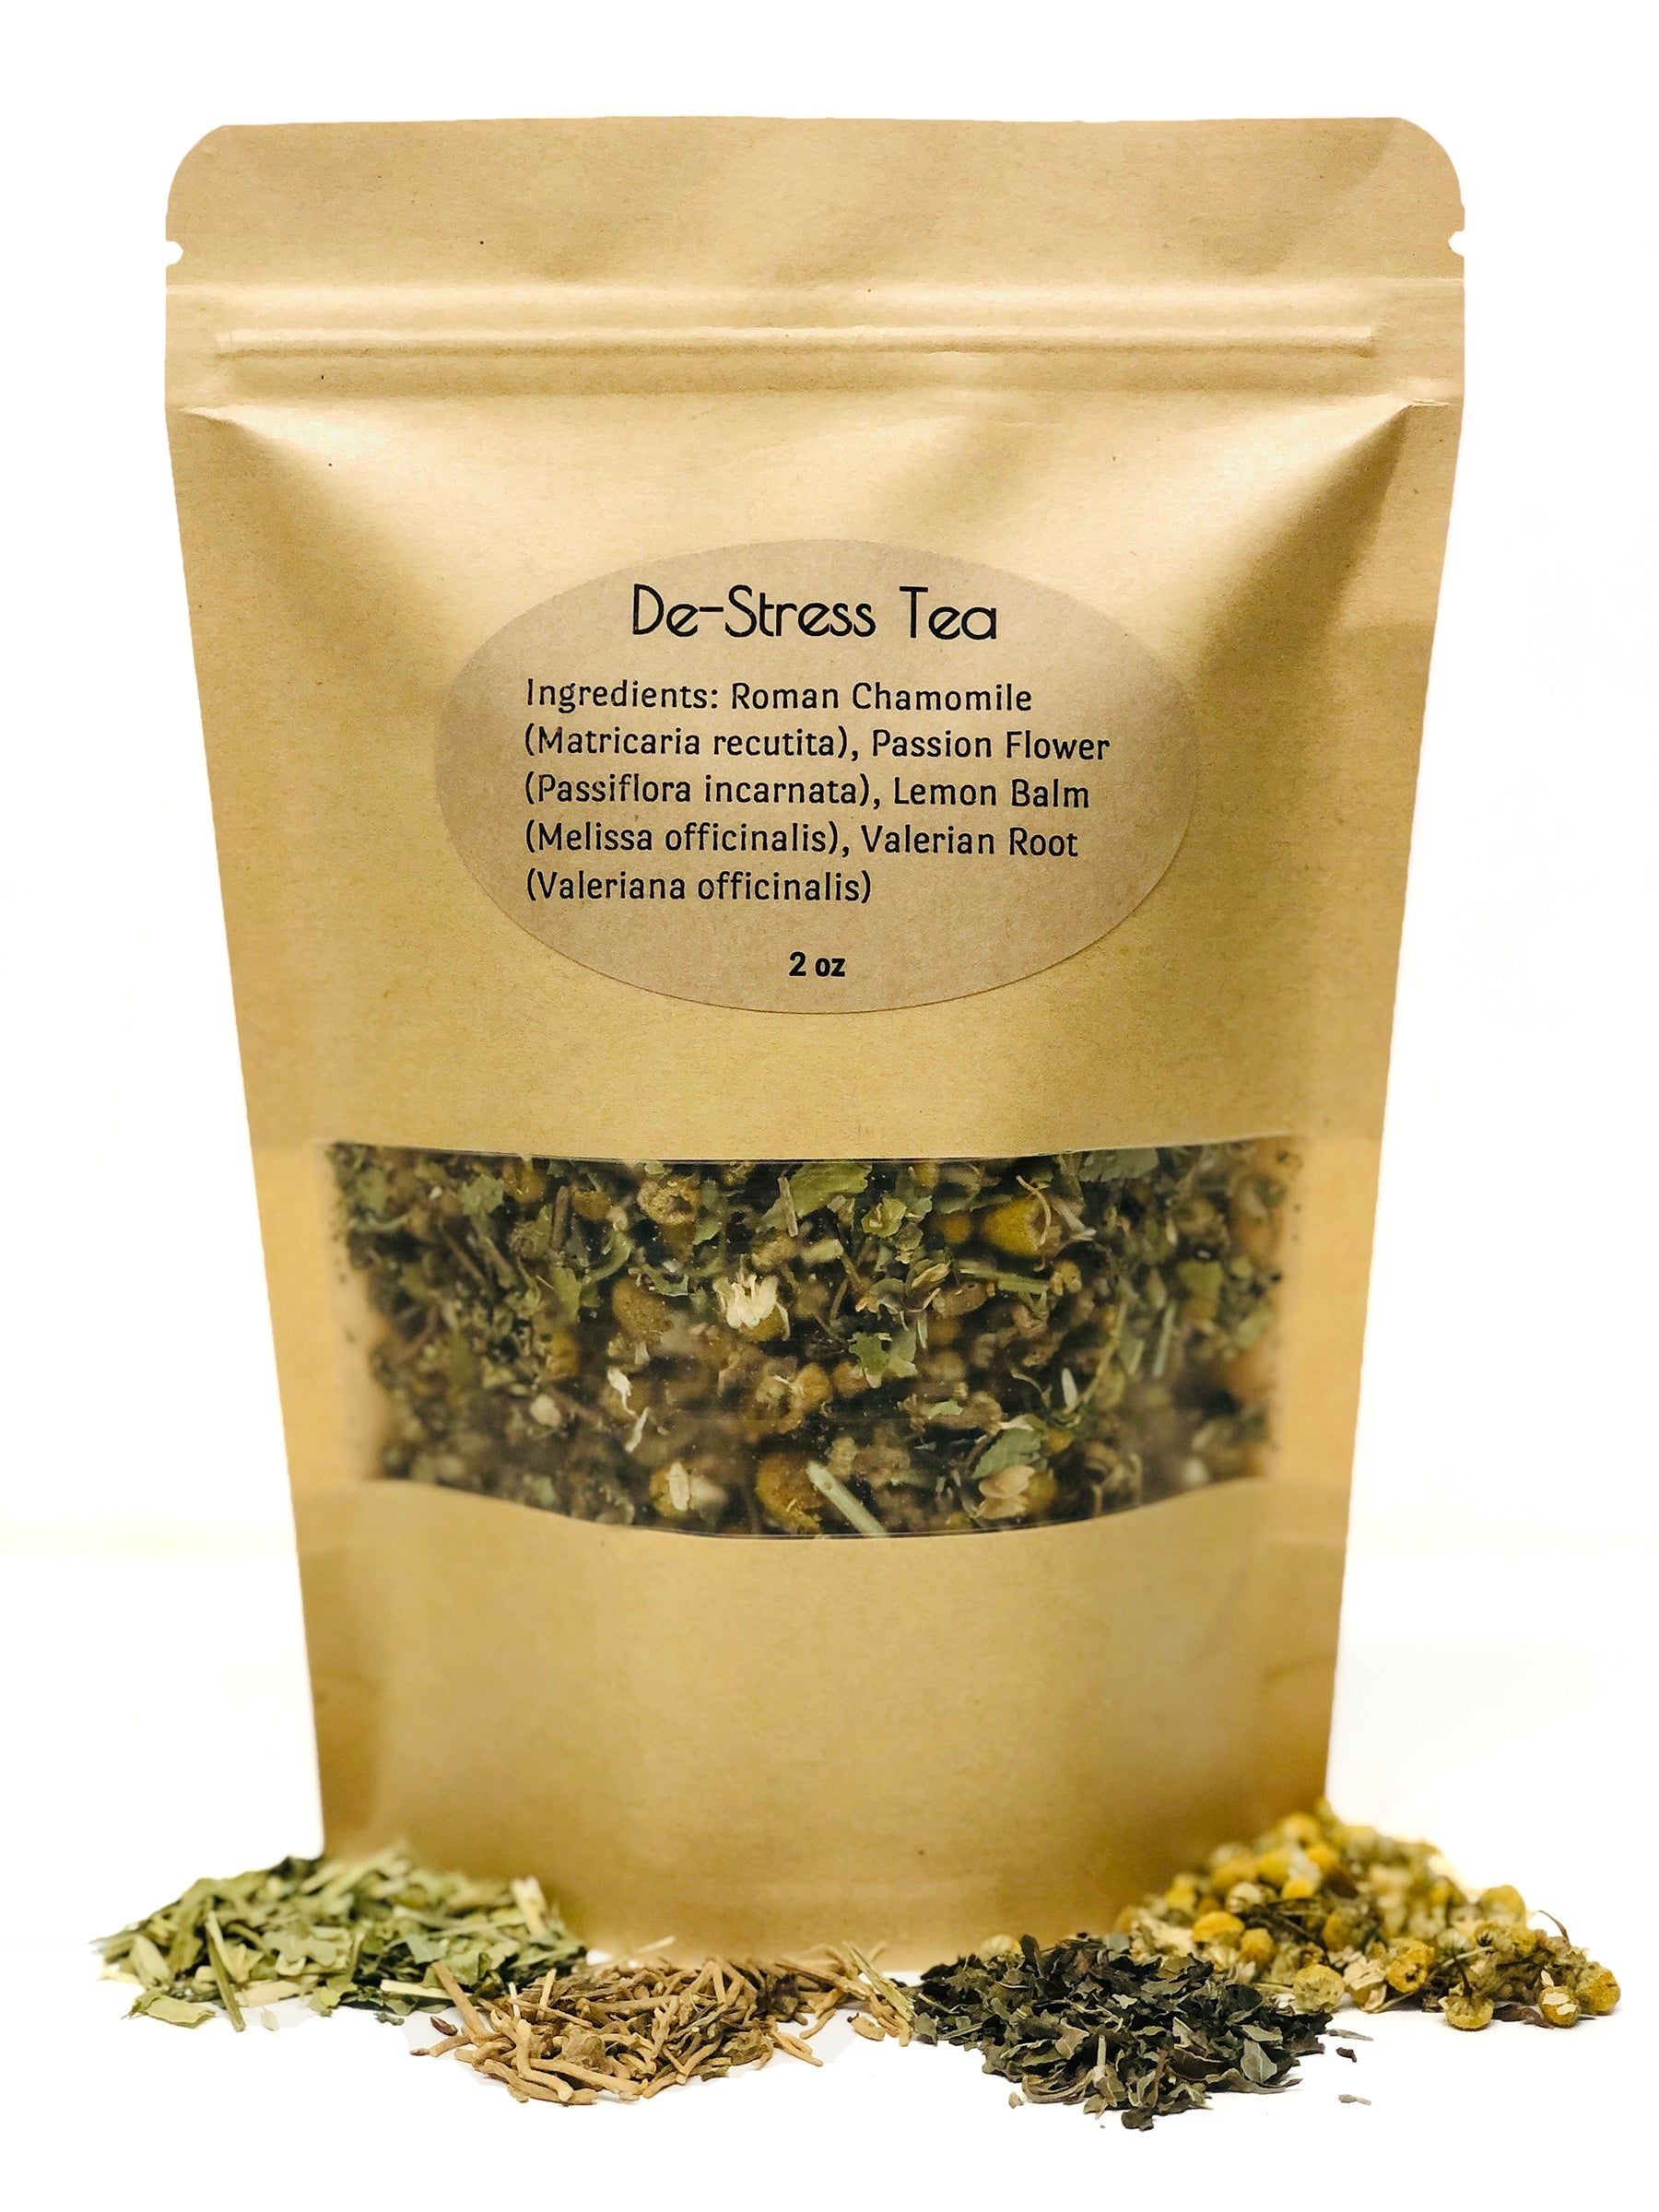 De-Stress Tea Tea The Herbologist Shop 